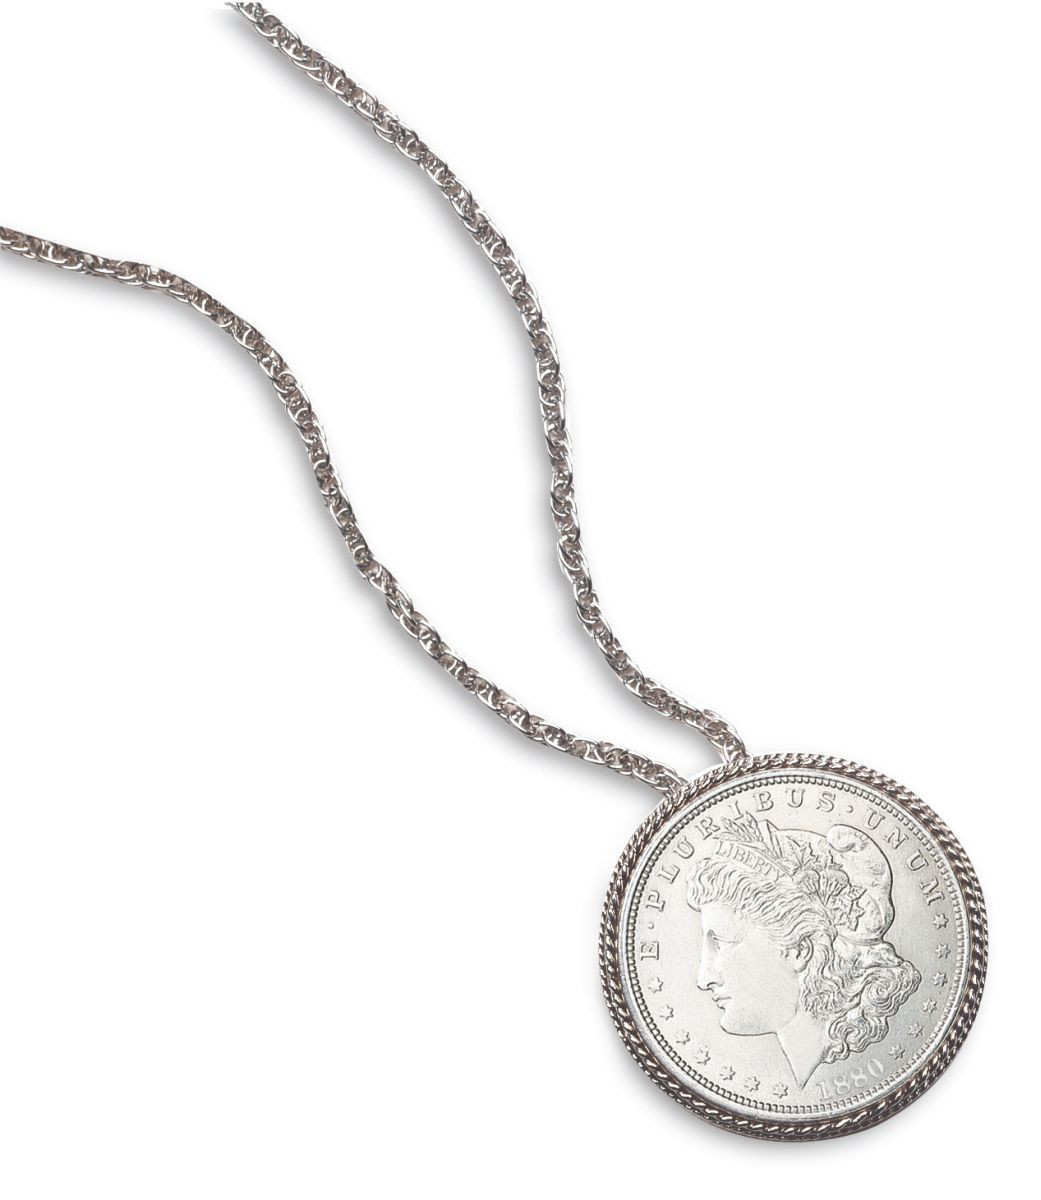 Morgan Silver Dollar Pin/Pendant - Actual Authentic Collectable ...